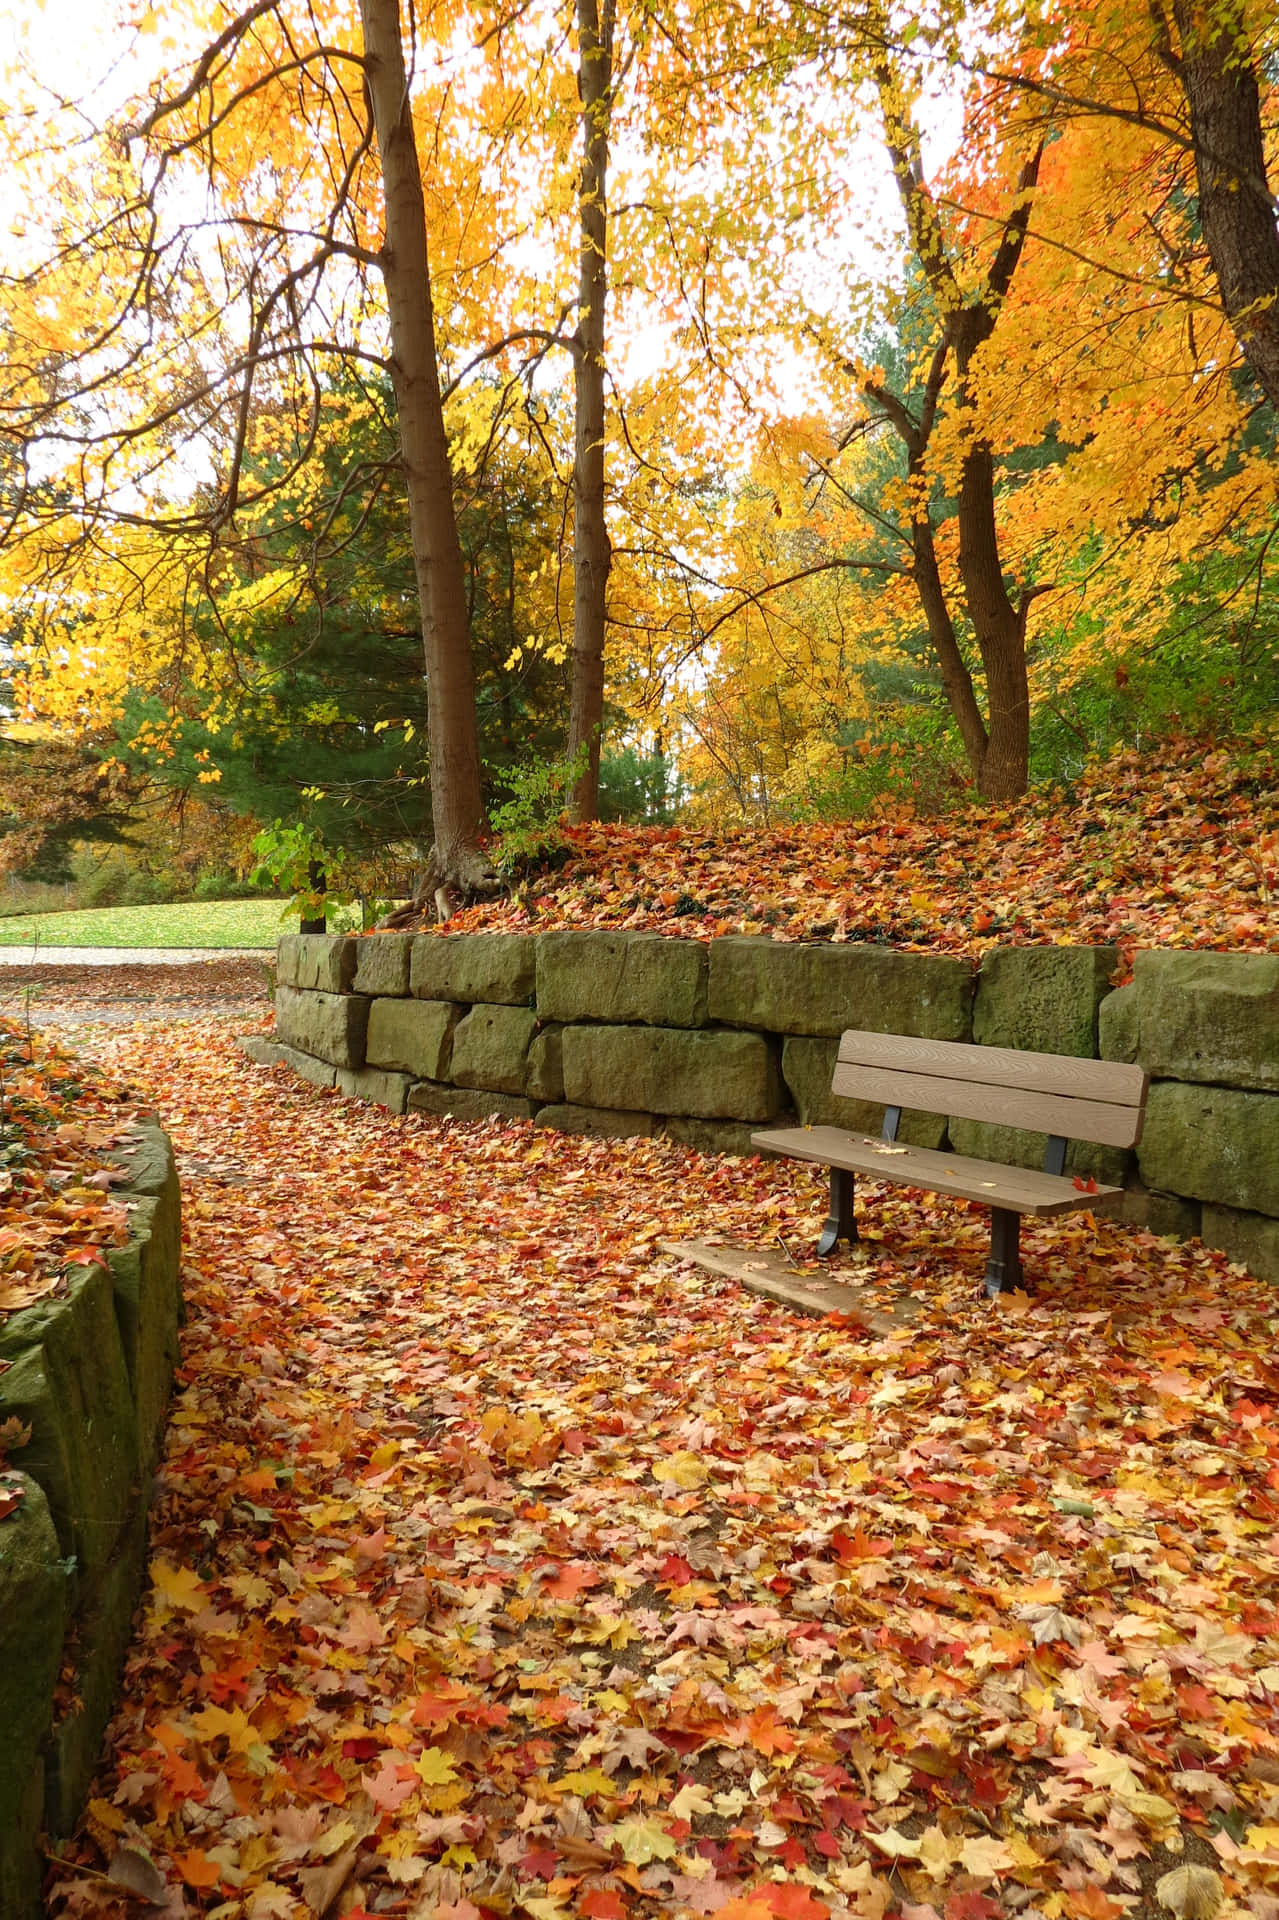 "Golden Autumn Bliss - A scenic walk through a stunning fall landscape" Wallpaper